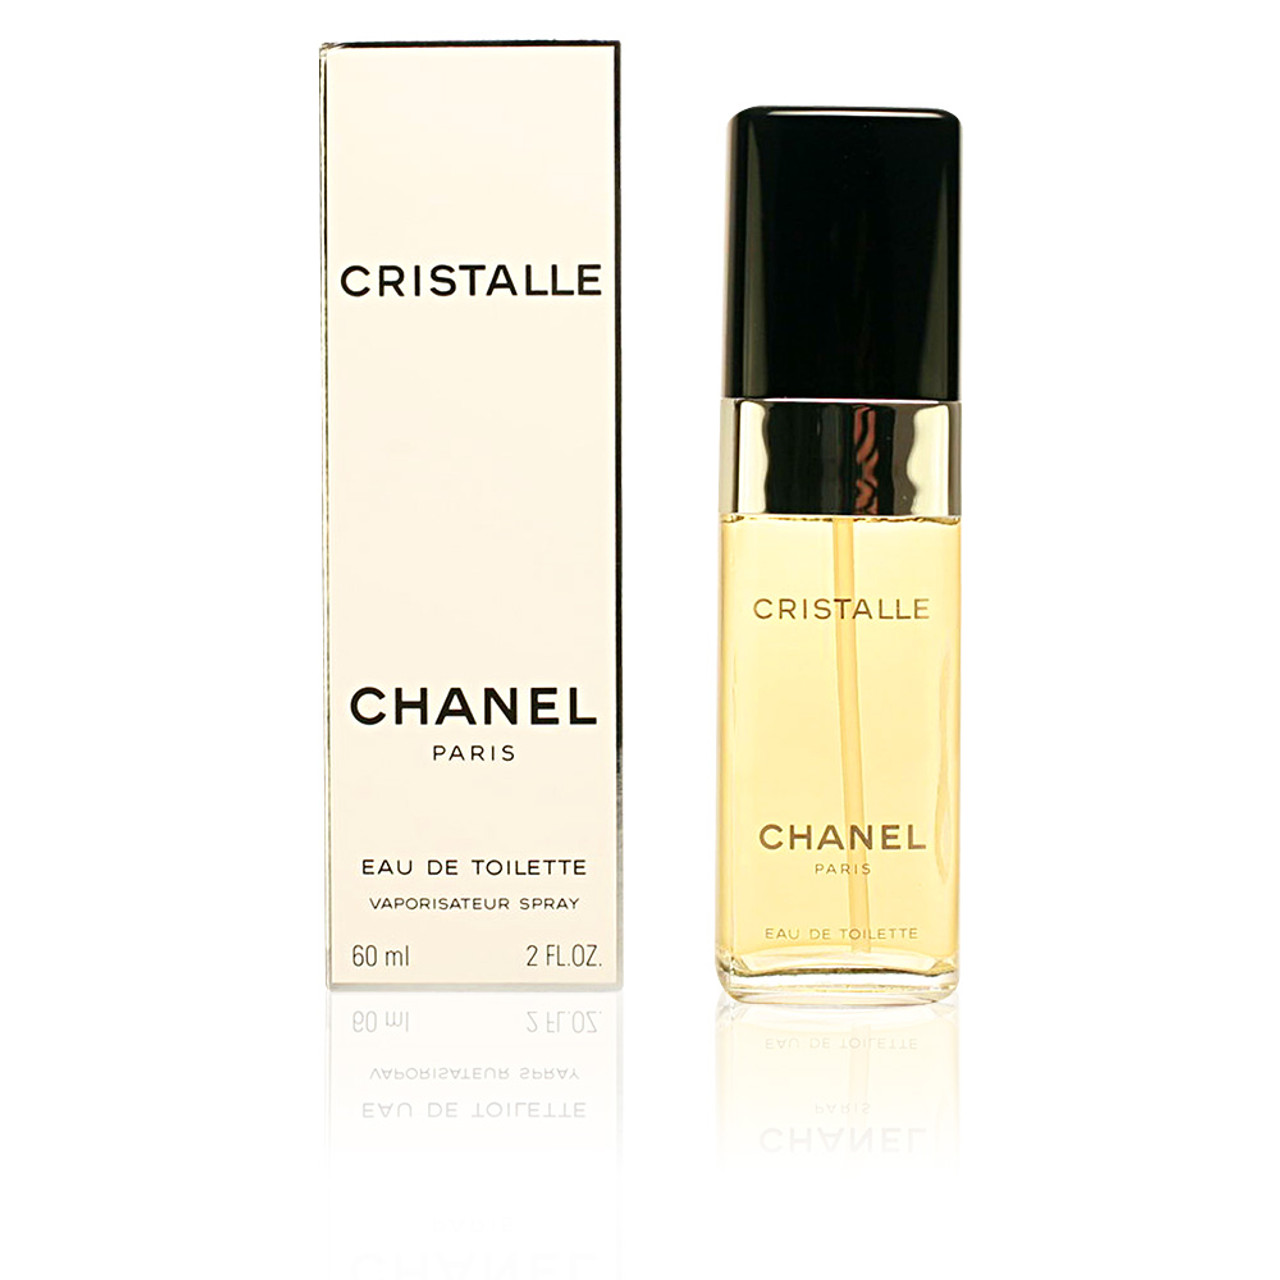 Chanel Ladies Cristalle EDP Spray 3.4 oz Fragrances 3145891354607